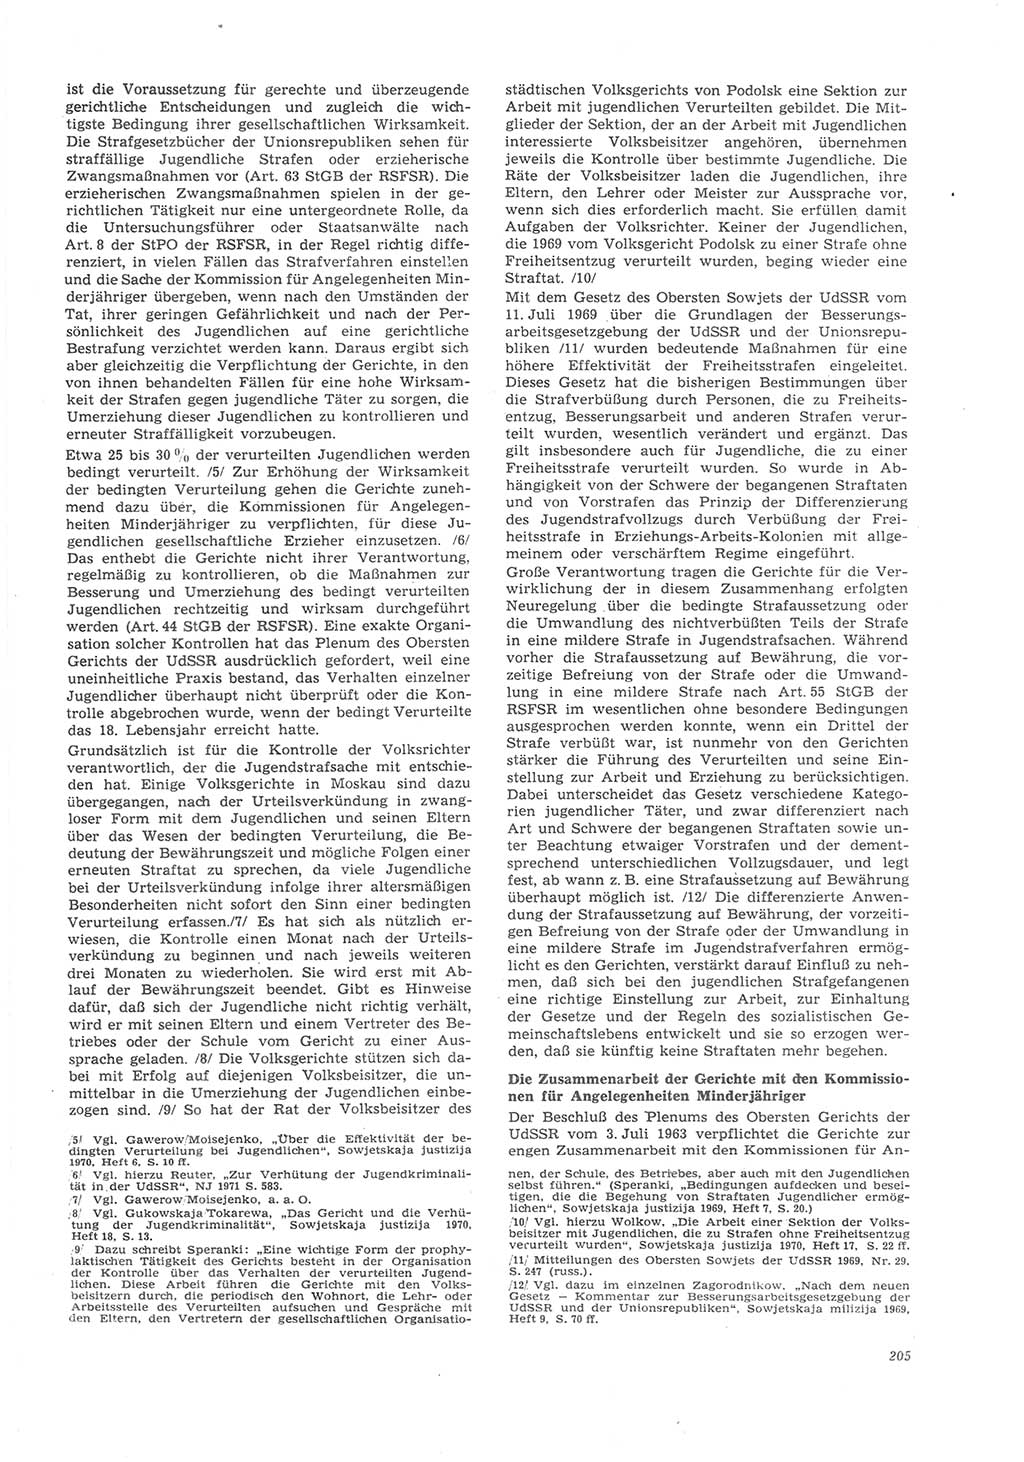 Neue Justiz (NJ), Zeitschrift für Recht und Rechtswissenschaft [Deutsche Demokratische Republik (DDR)], 26. Jahrgang 1972, Seite 205 (NJ DDR 1972, S. 205)